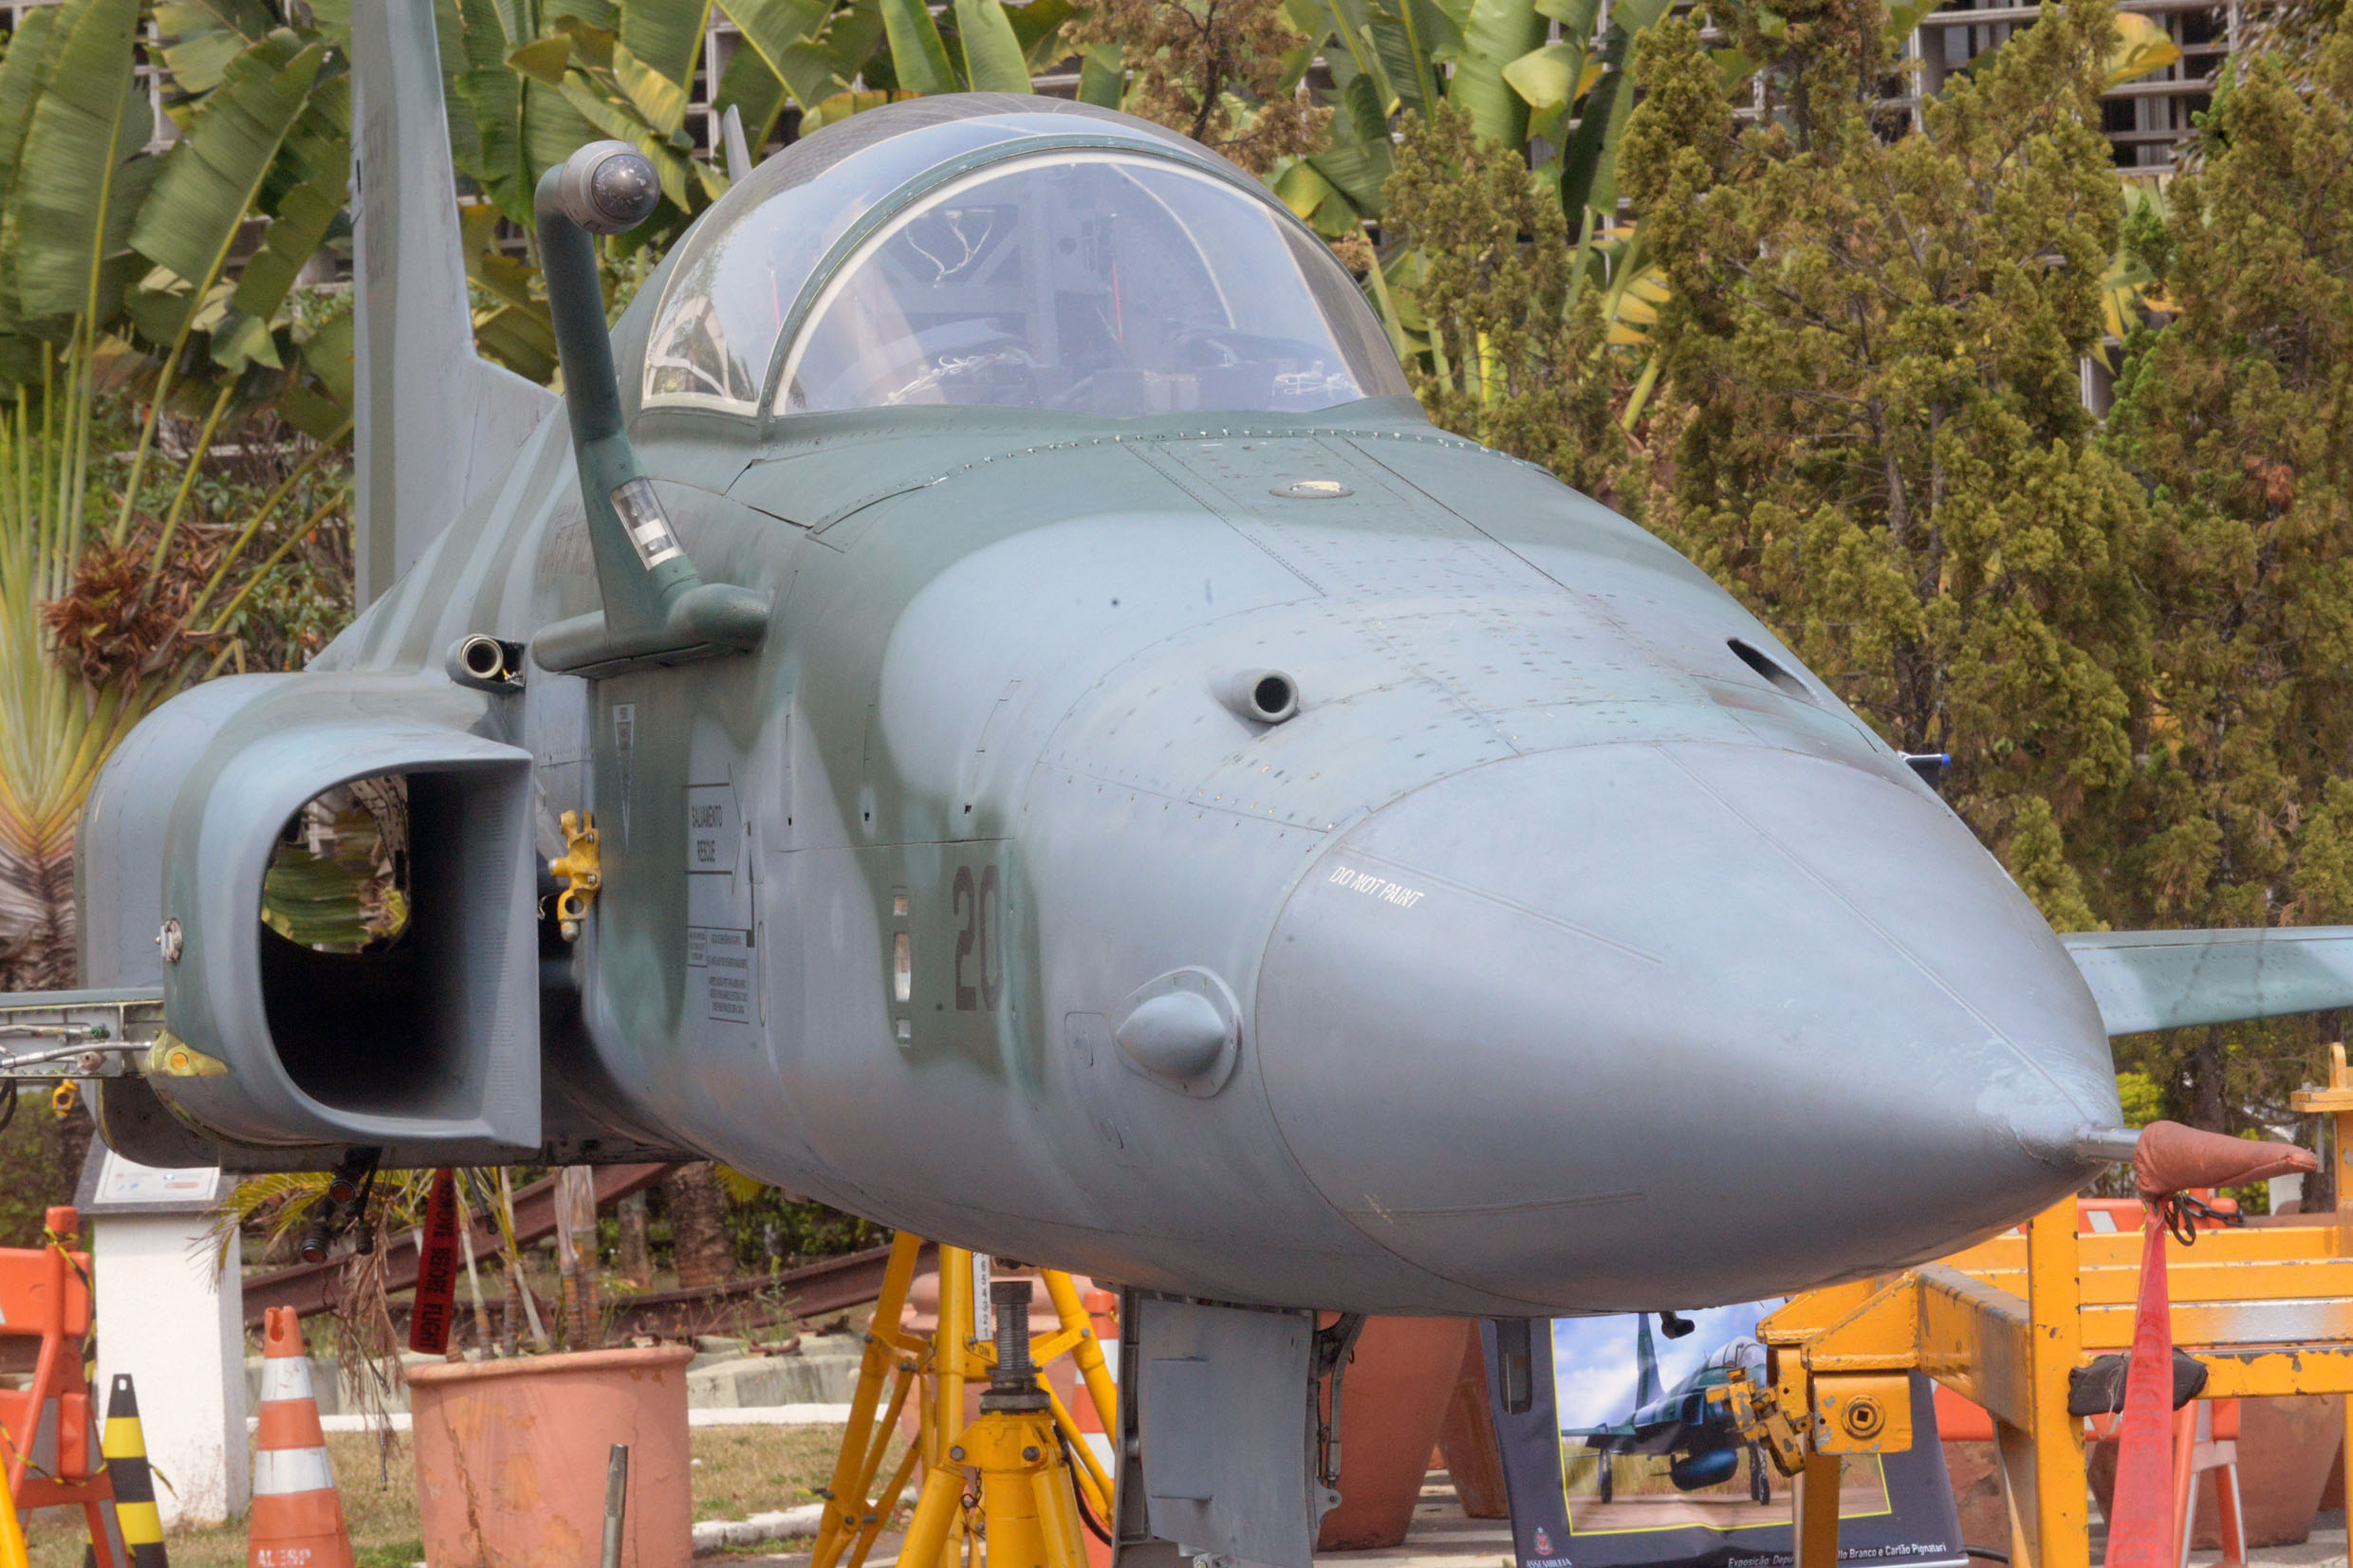 File:Brinquedo - Avião Força Aérea Brasileira, Acervo do Museu Paulista da  USP (5).jpg - Wikimedia Commons